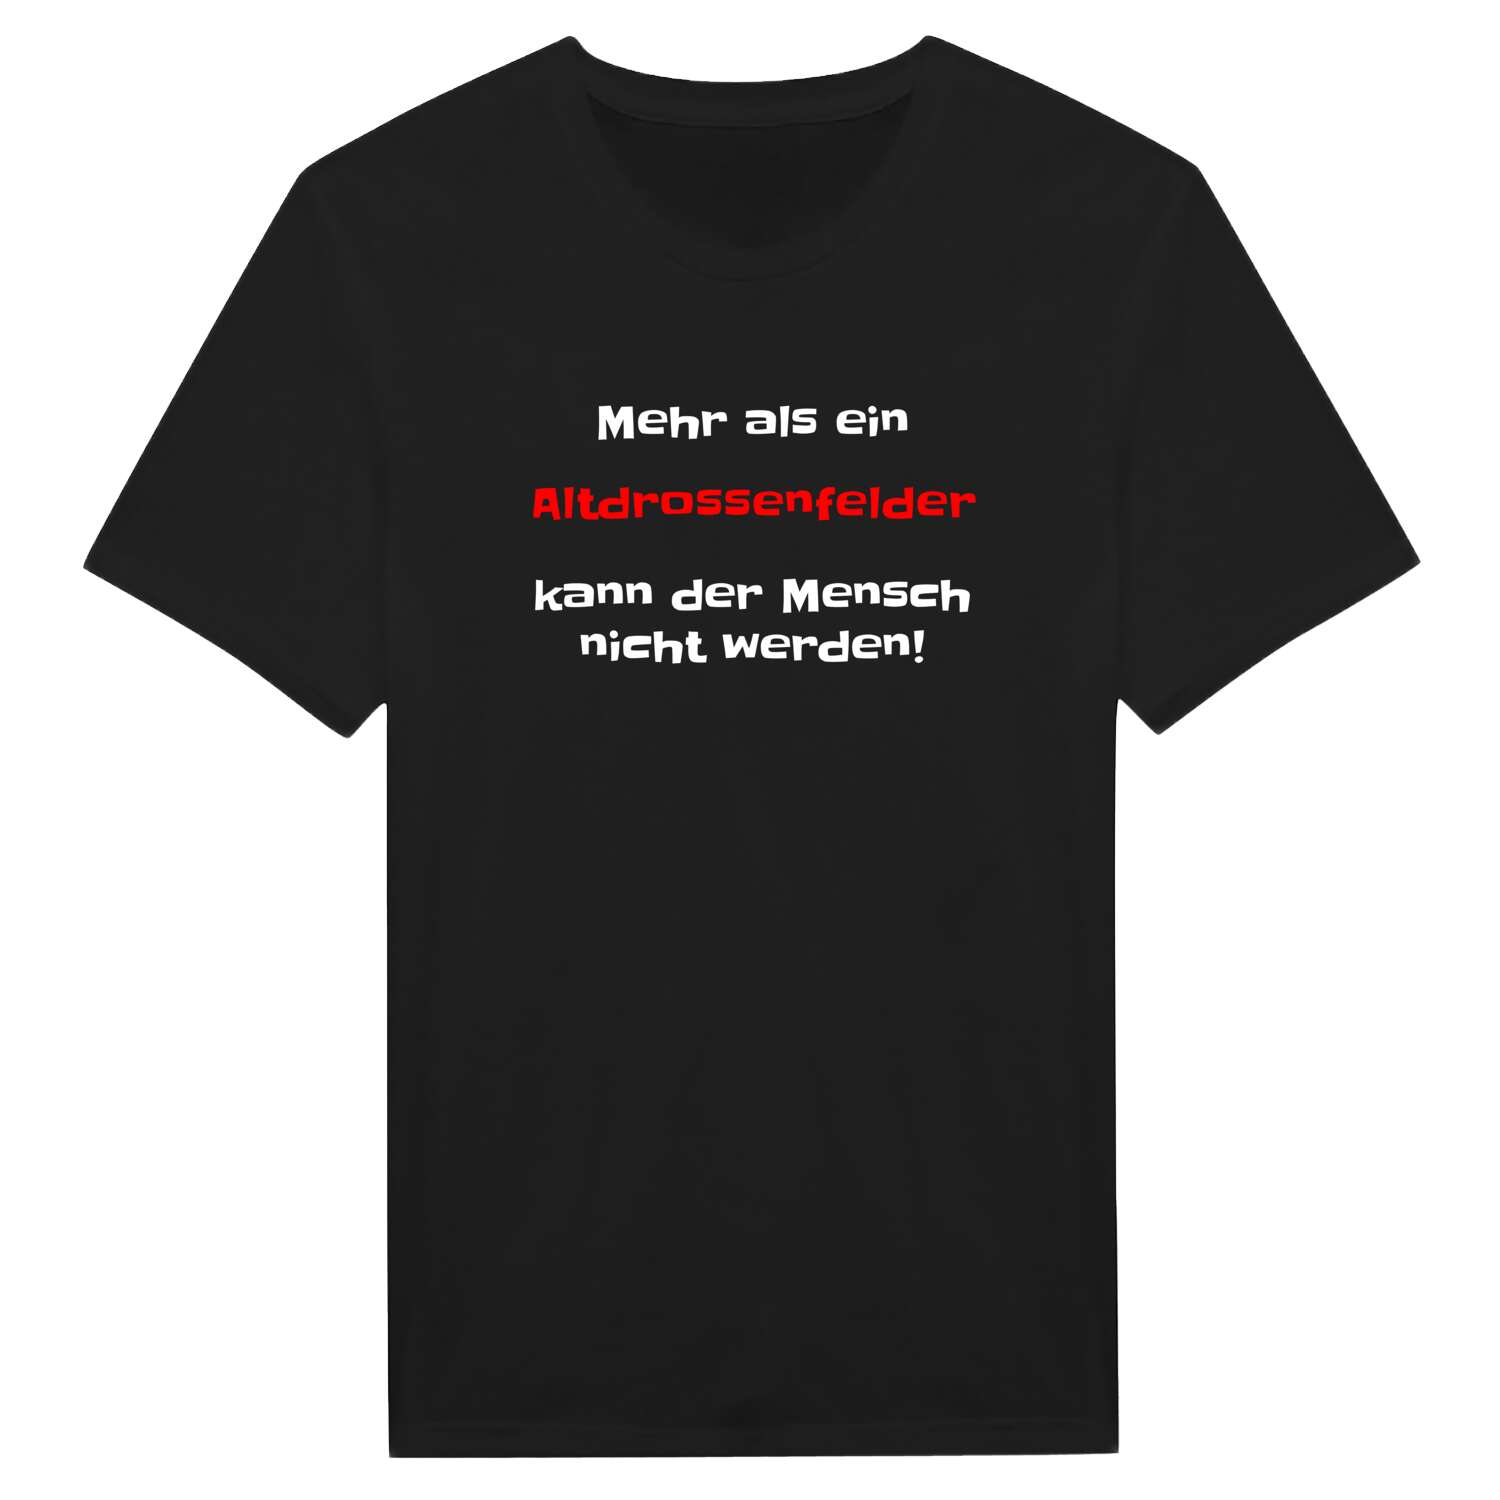 Altdrossenfeld T-Shirt »Mehr als ein«